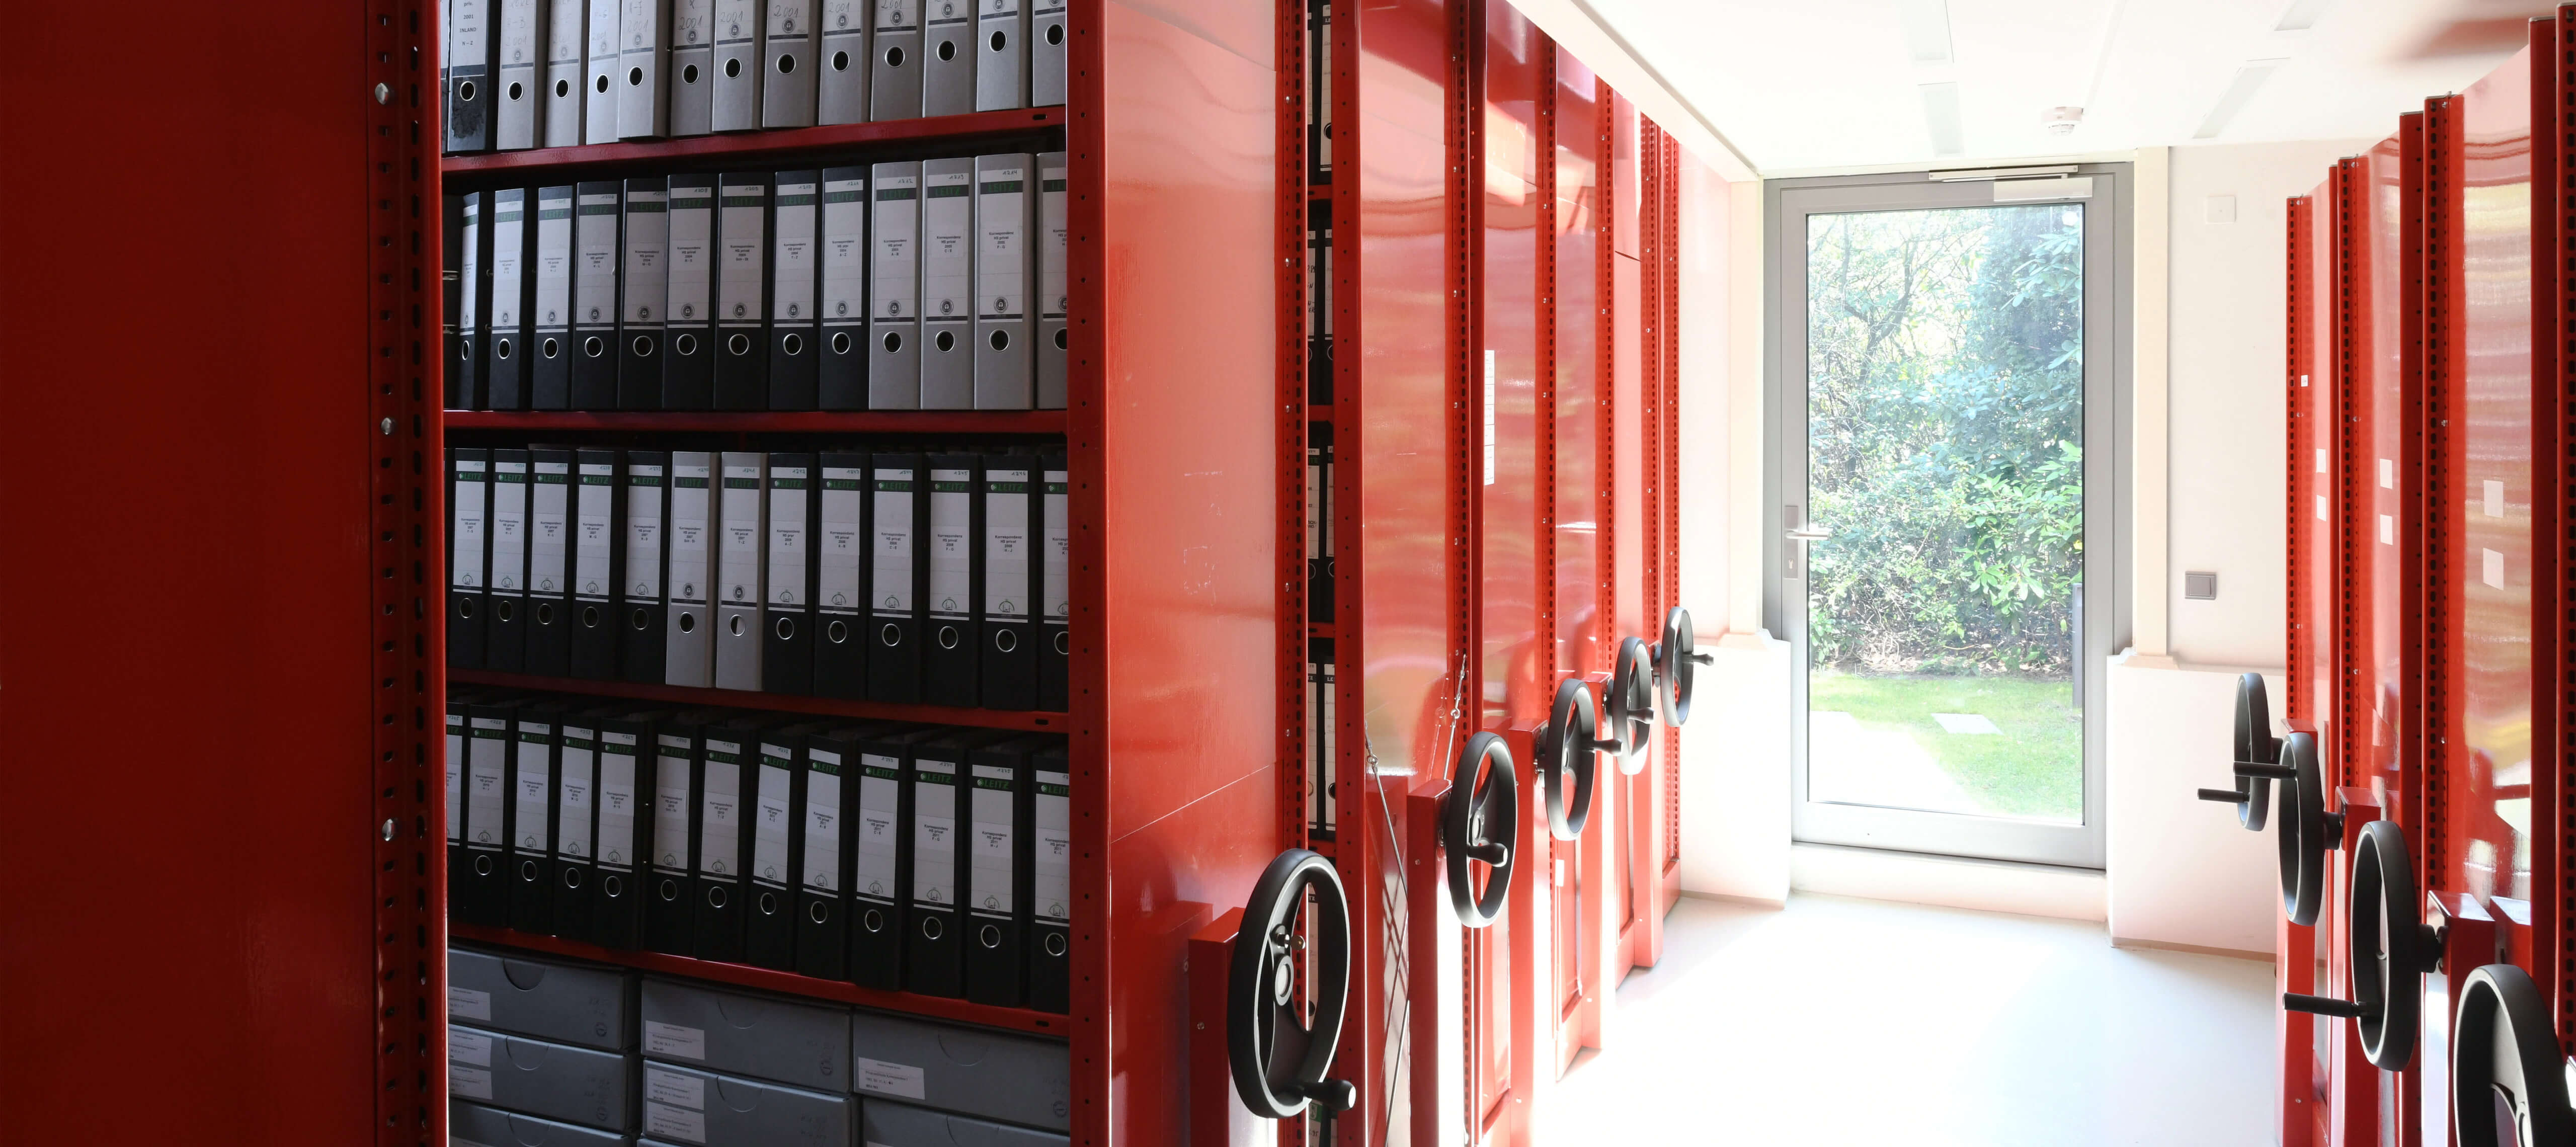 Blick in das Archiv. Die Aktenordner werden in roten bewegbaren Archiv-Regalen aus Blech aufbewahrt.